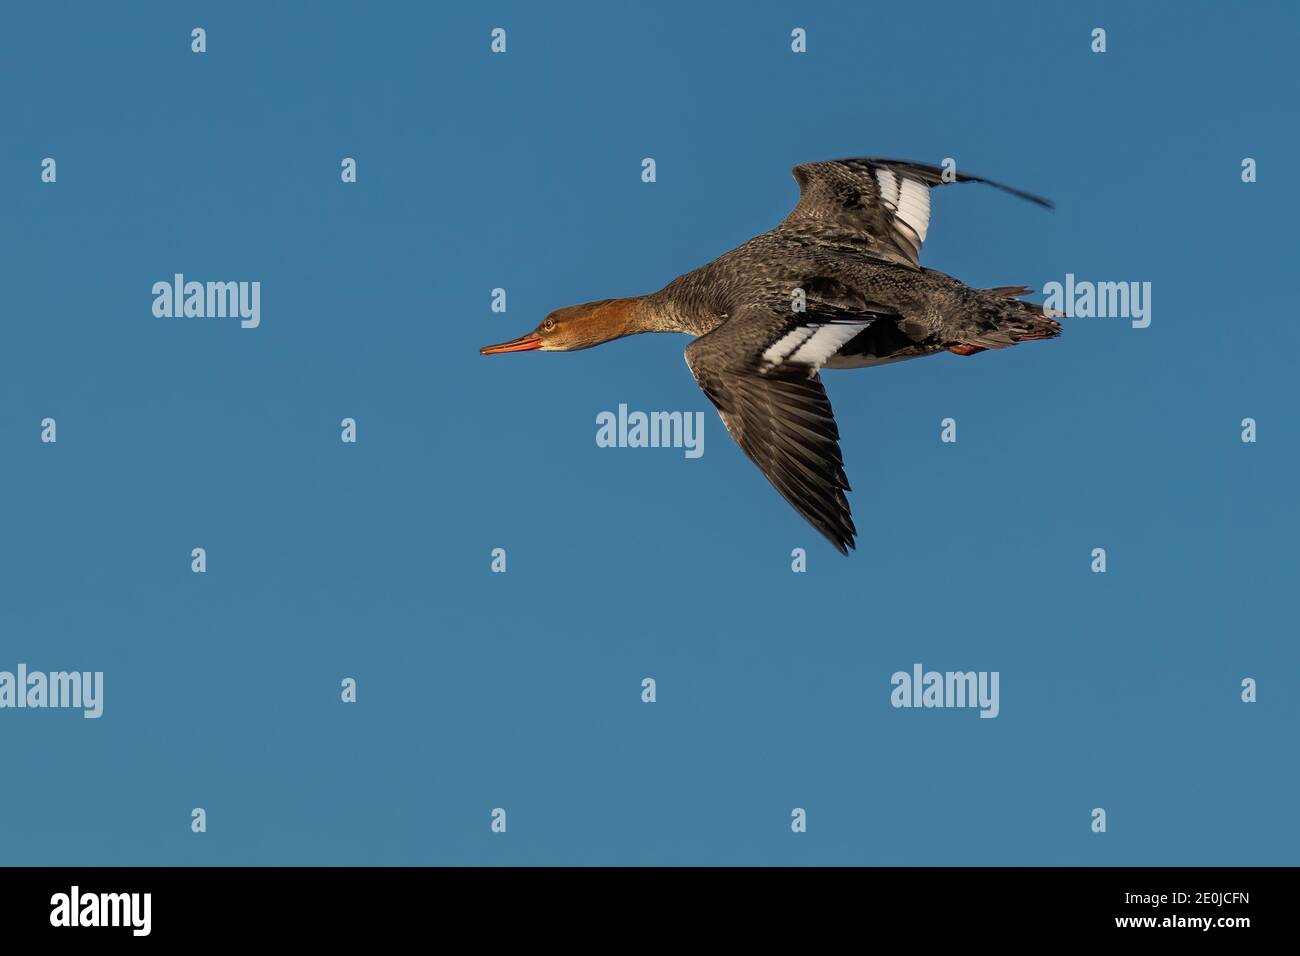 common merganser flying over water Stock Photo